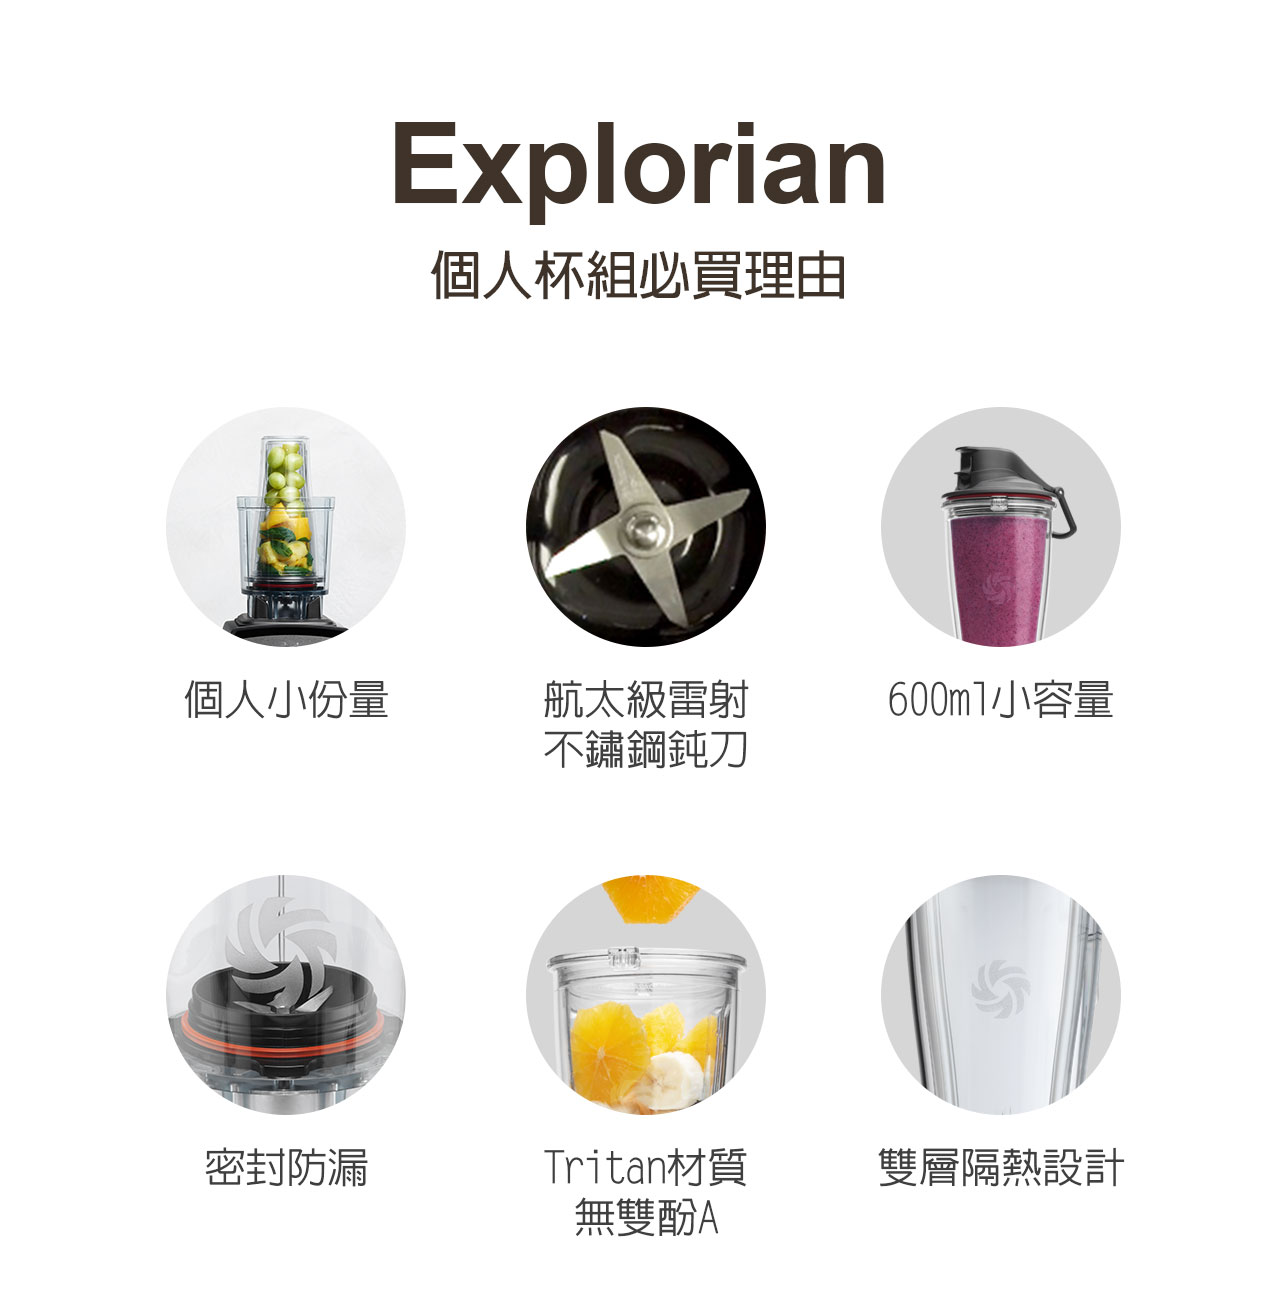 大侑-dietu-食譜-料理分享-Vitamix-A3500i超跑級調理機-陳月卿-養生達人-新品上市-容杯-Explorian